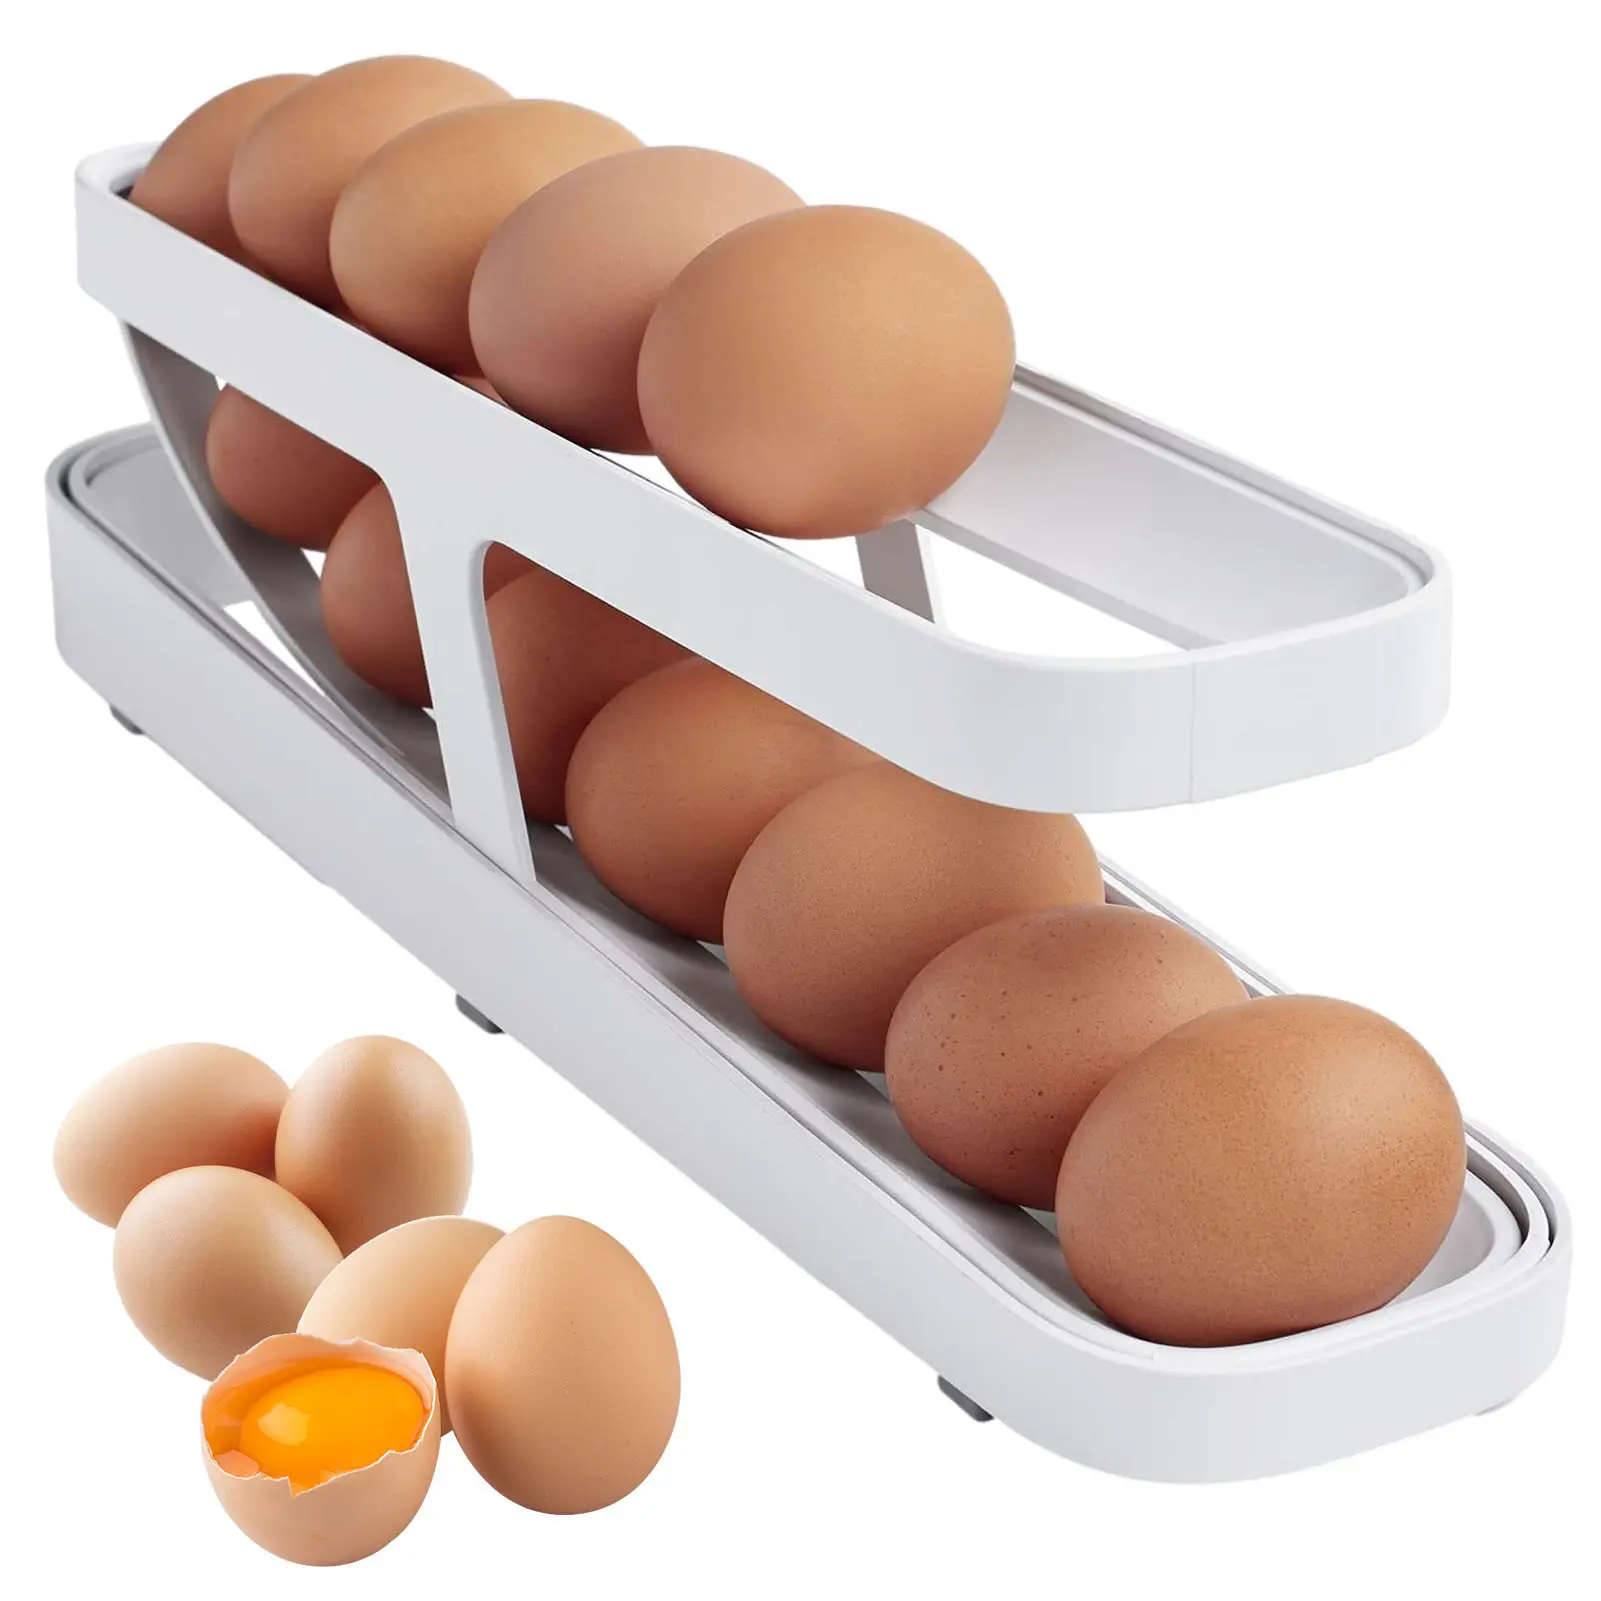 กล่องพลาสติกใส่ไข่เลื่อนได้อัตโนมัติ, กล่องใส่ถาดใส่ไข่สำหรับใช้ในครัวบ้าน